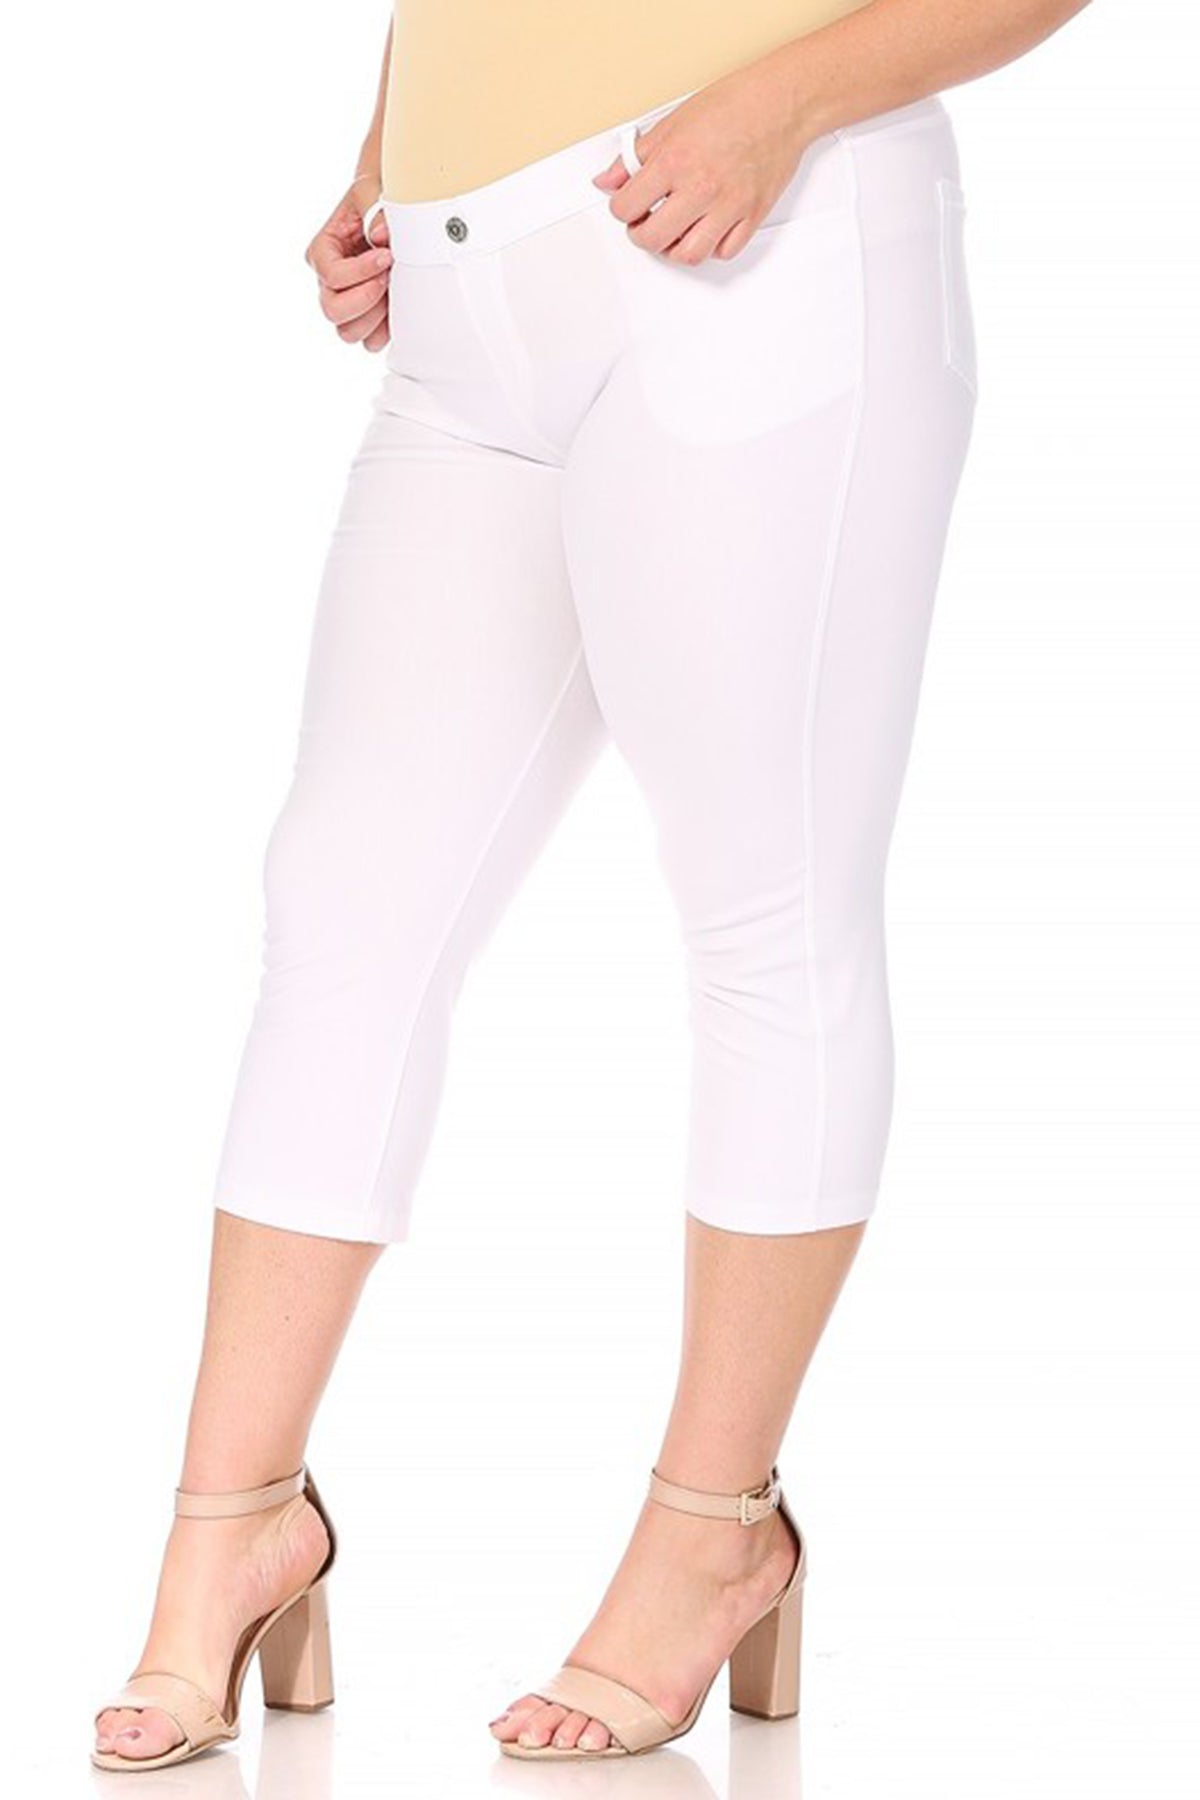 Women's Plus Size Casual Comfy Slim Pocket Jeggings Jeans Capri Pants